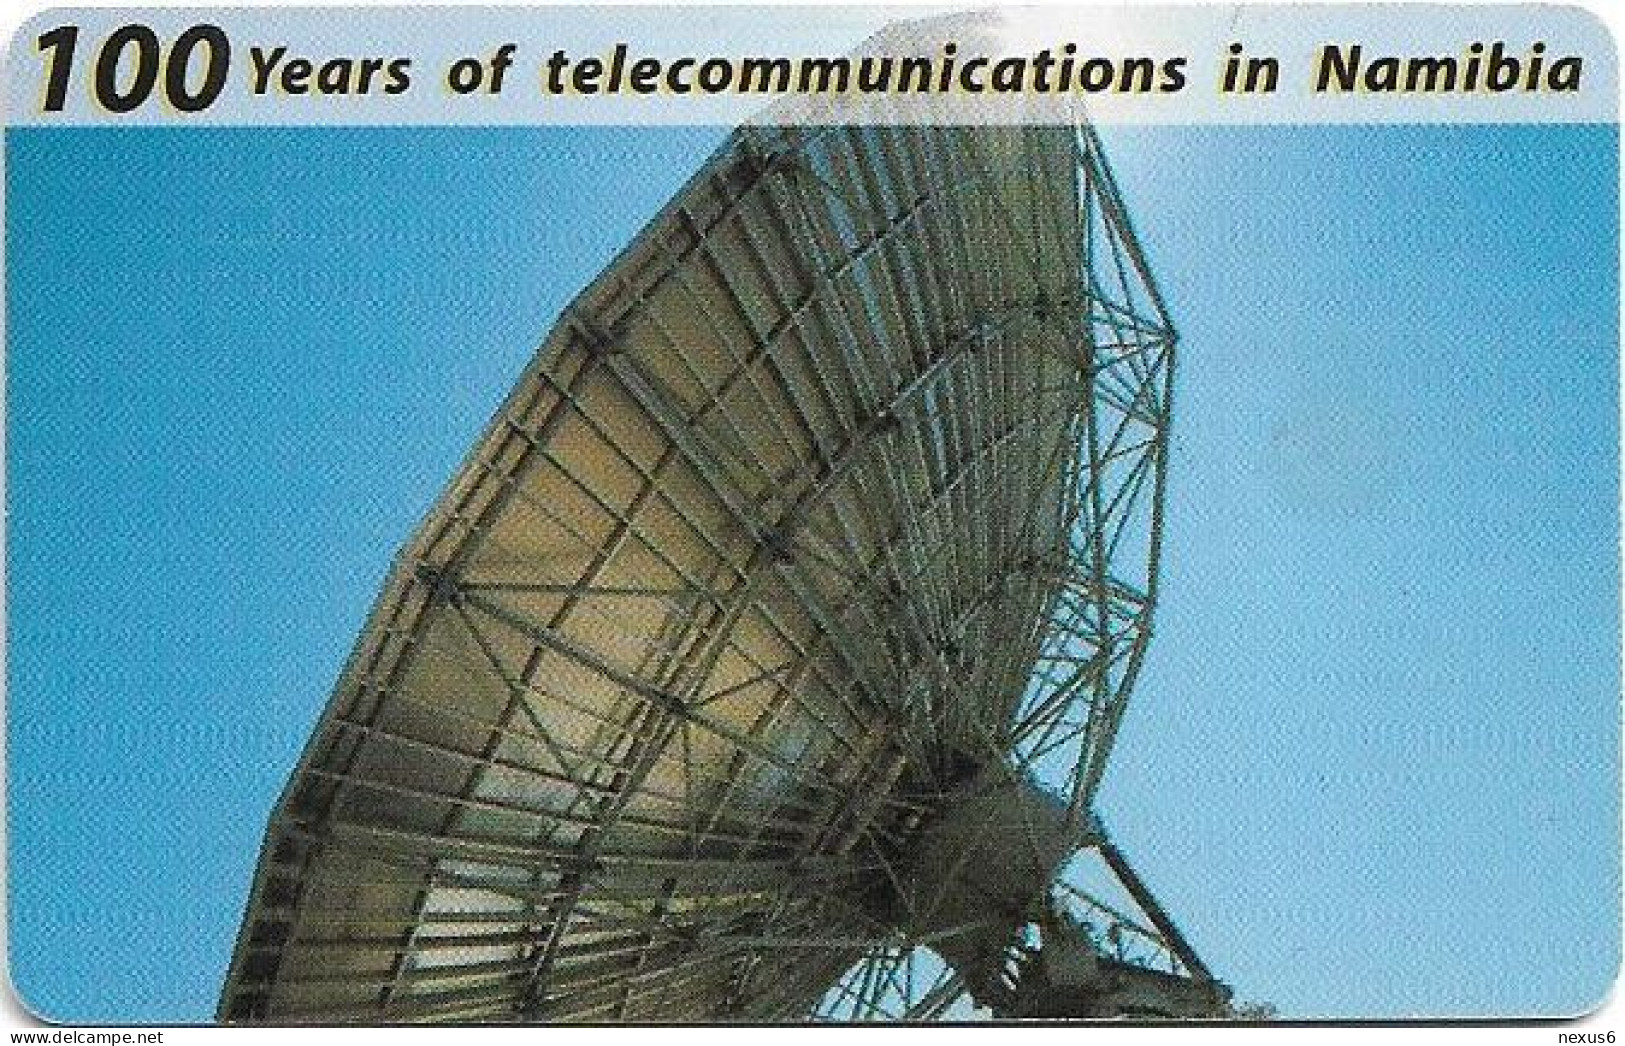 Namibia - Telecom Namibia - 100 Years Telecom, Satellite Dish, 1999, 10$, Used - Namibia